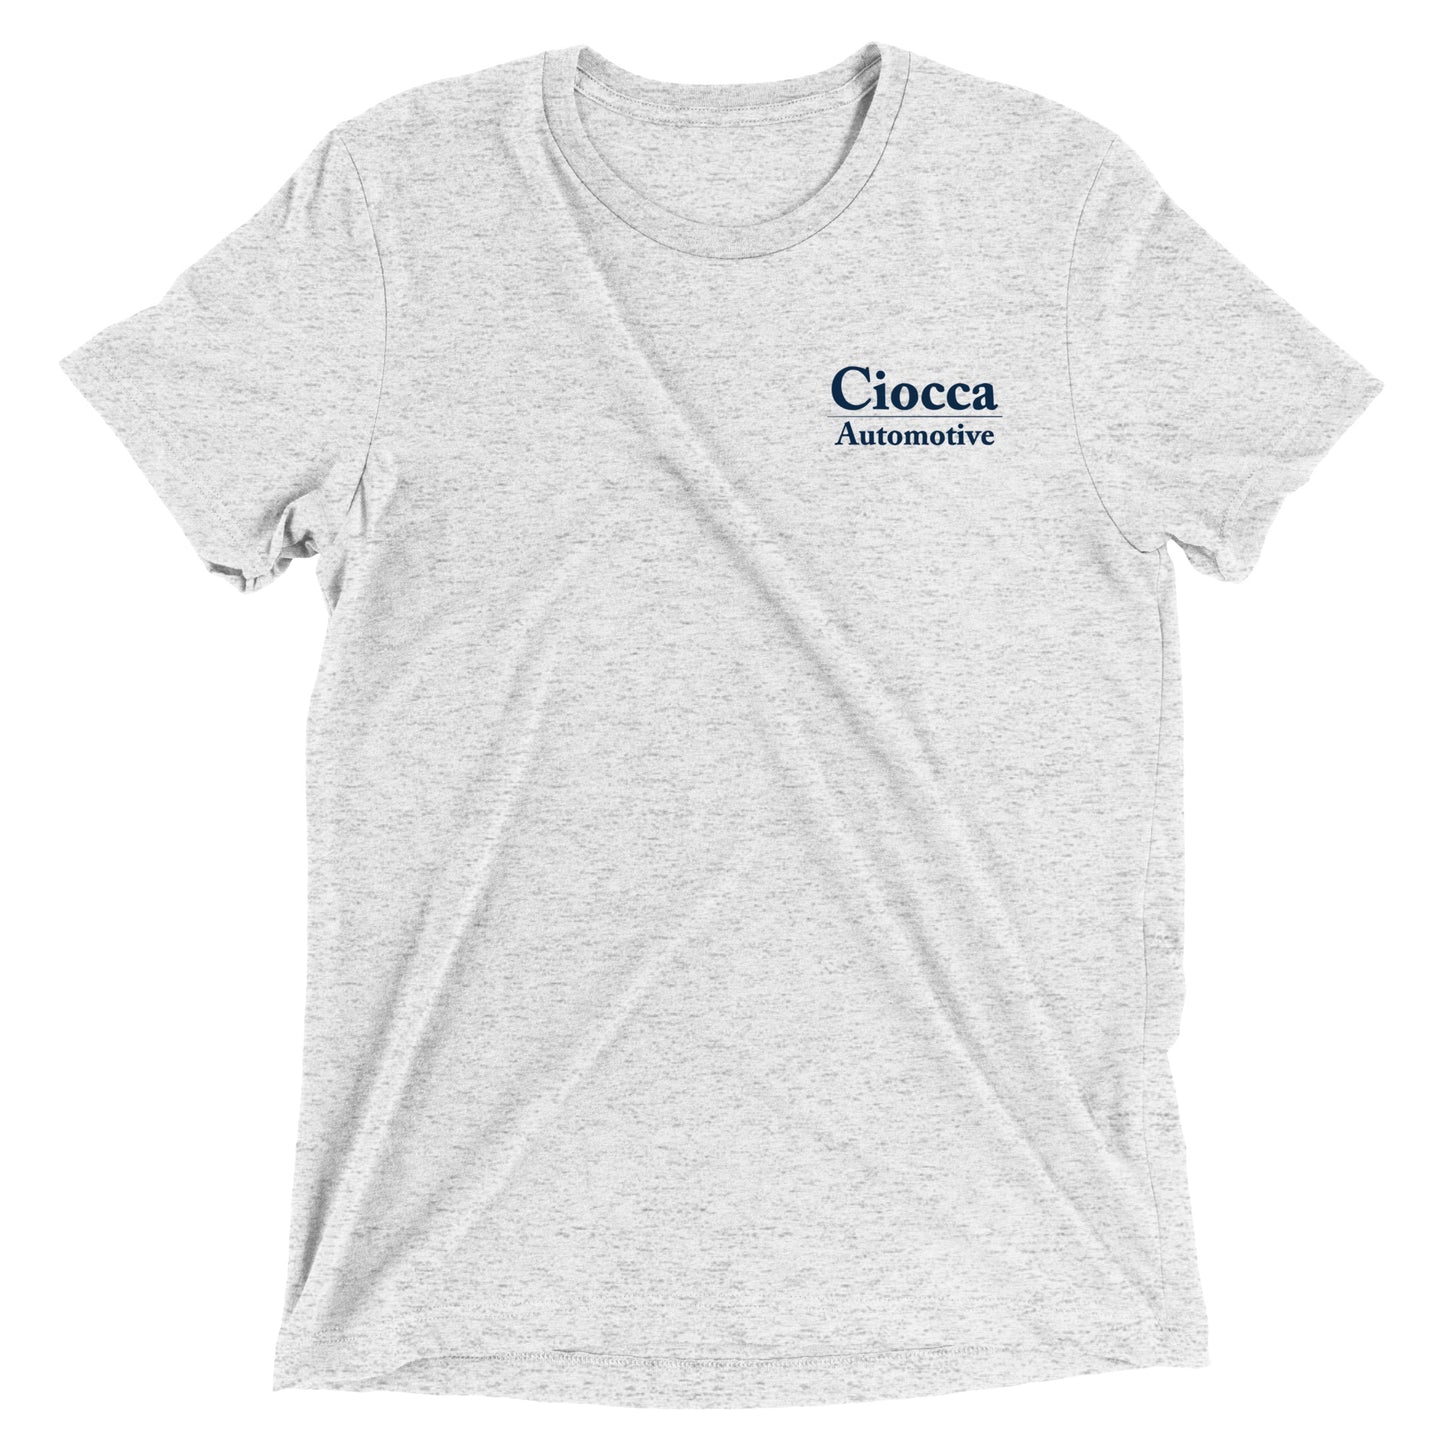 Extra-soft Tri-blend T-shirt - Ciocca